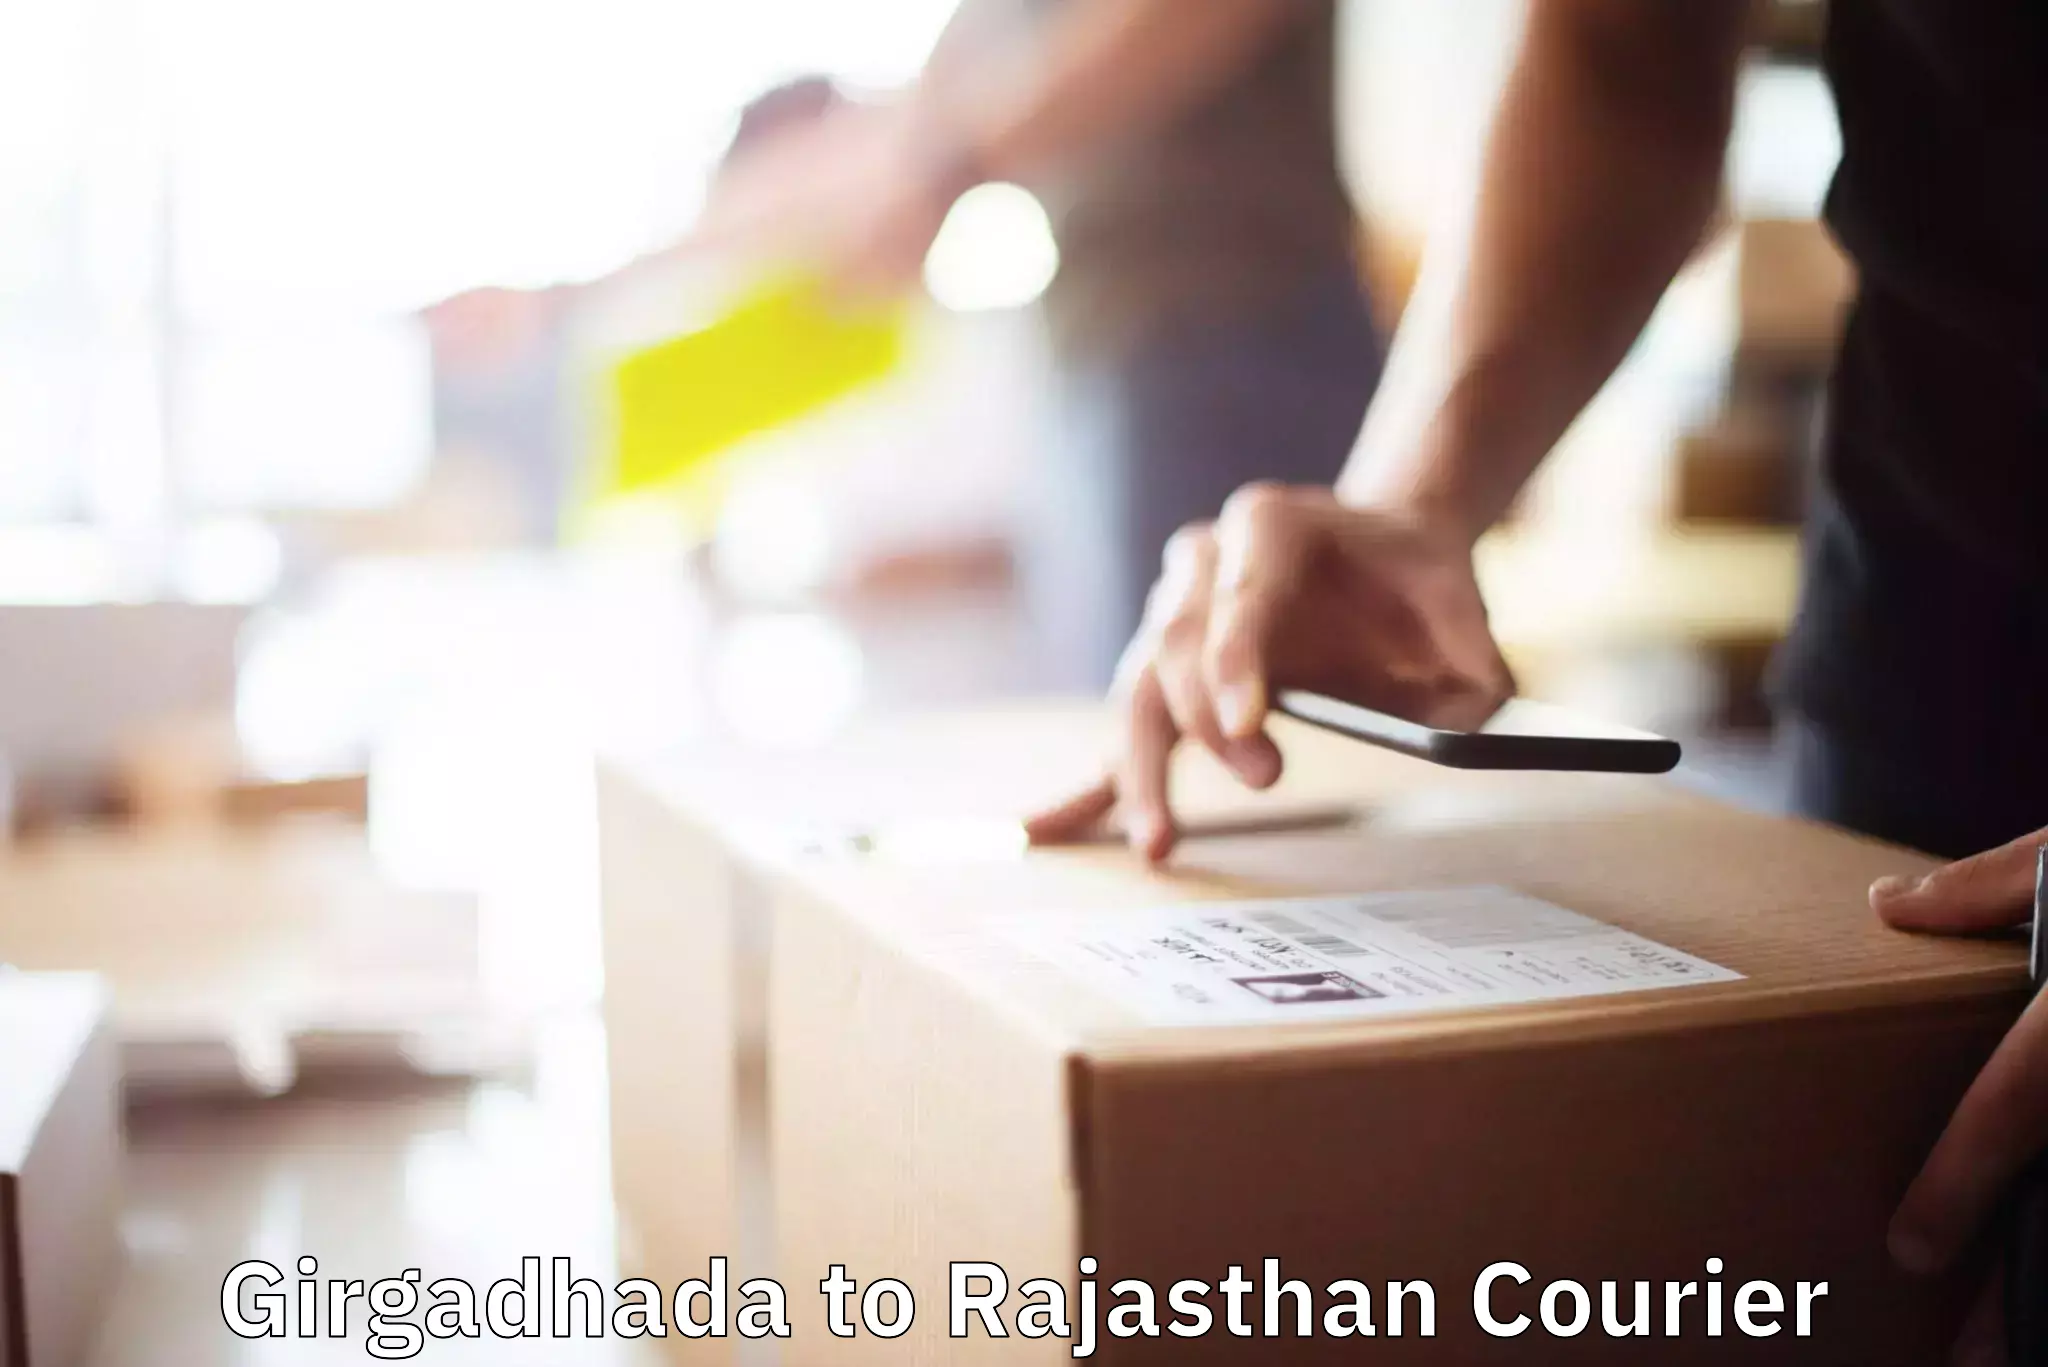 Furniture moving and handling Girgadhada to Rajasthan